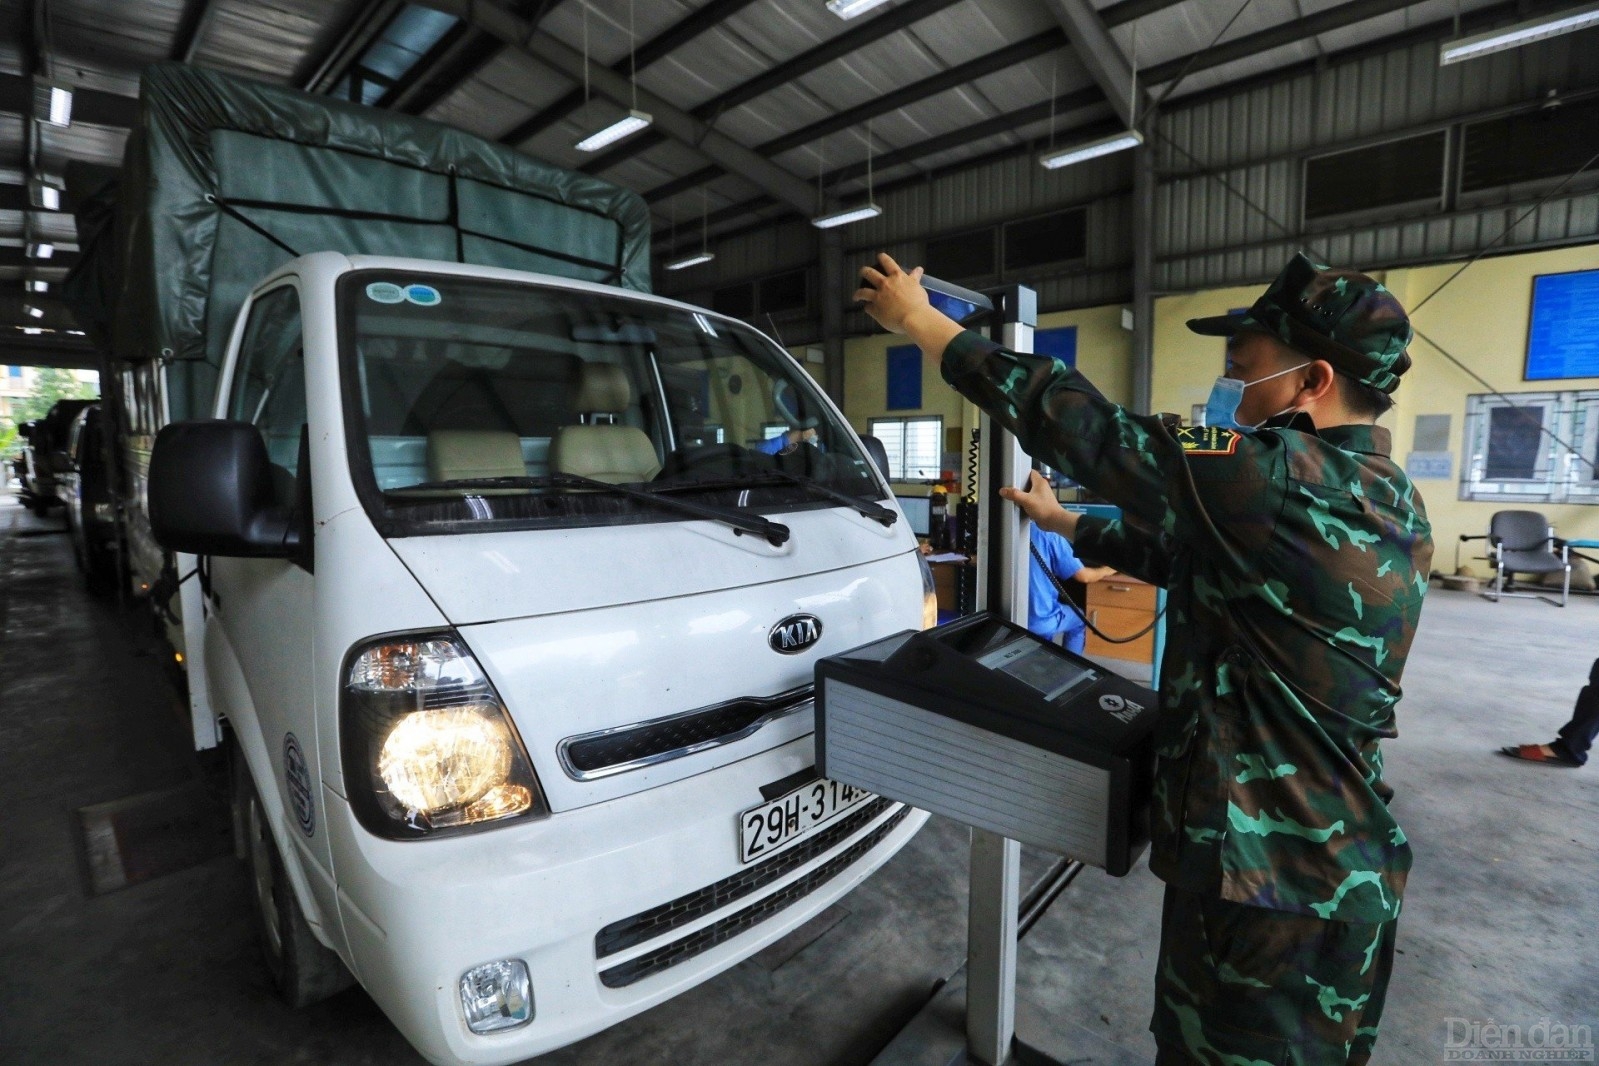 Quân đội tham gia hỗ trợ tại các trung tâm đăng kiểm 
Bắt đầu từ hôm nay 20/3/2023, lực lượng quân đội sẽ tham gia hỗ trợ công tác đăng kiểm tại Hà Nội và TP. Hồ Chí Minh.